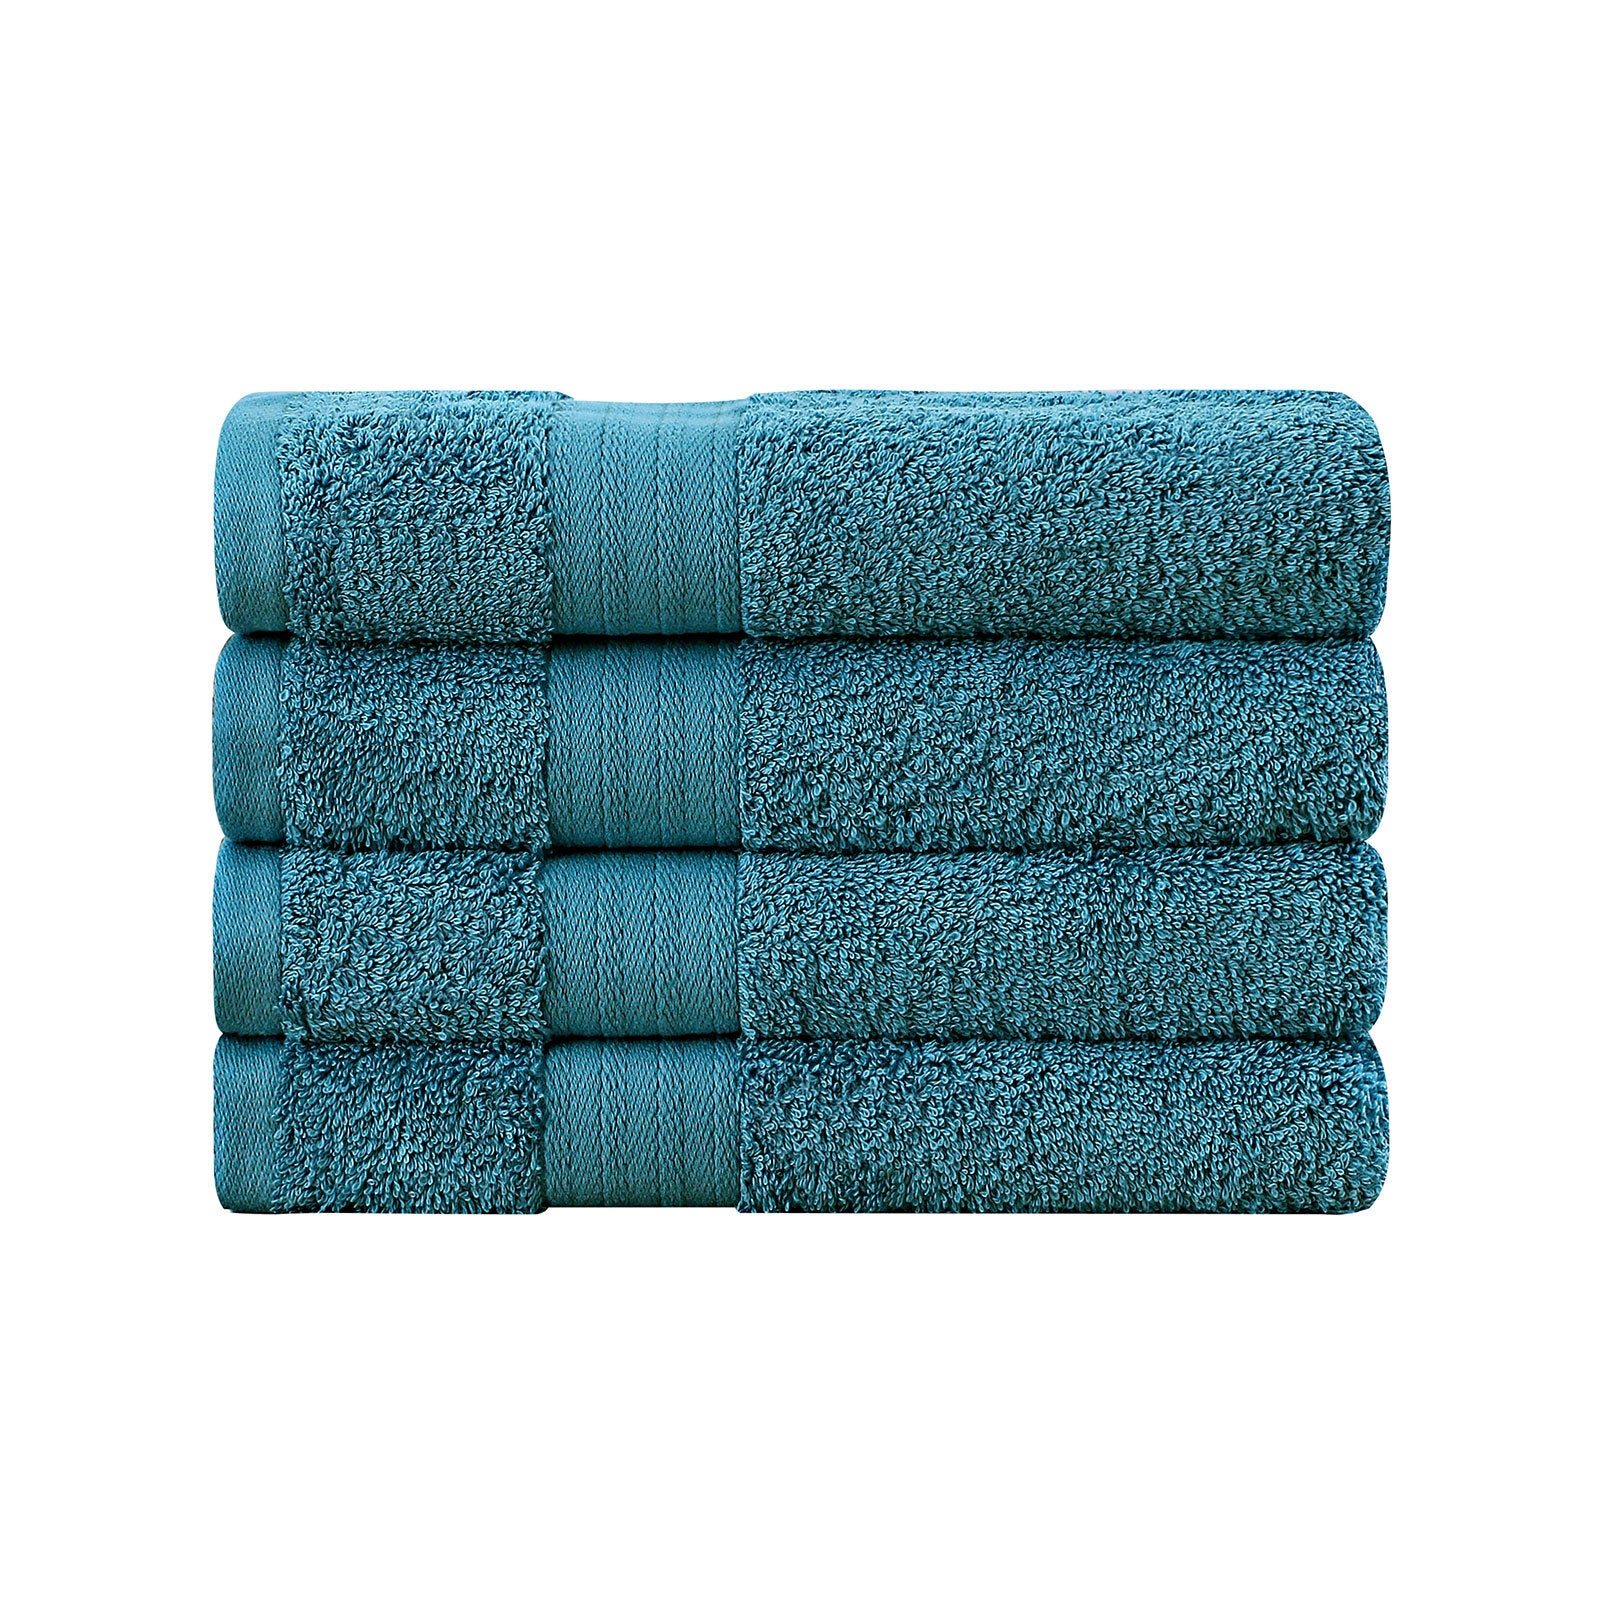 Linenland Bath Towel 4 Piece Cotton Hand Towels Set - Blue - BM House & Garden